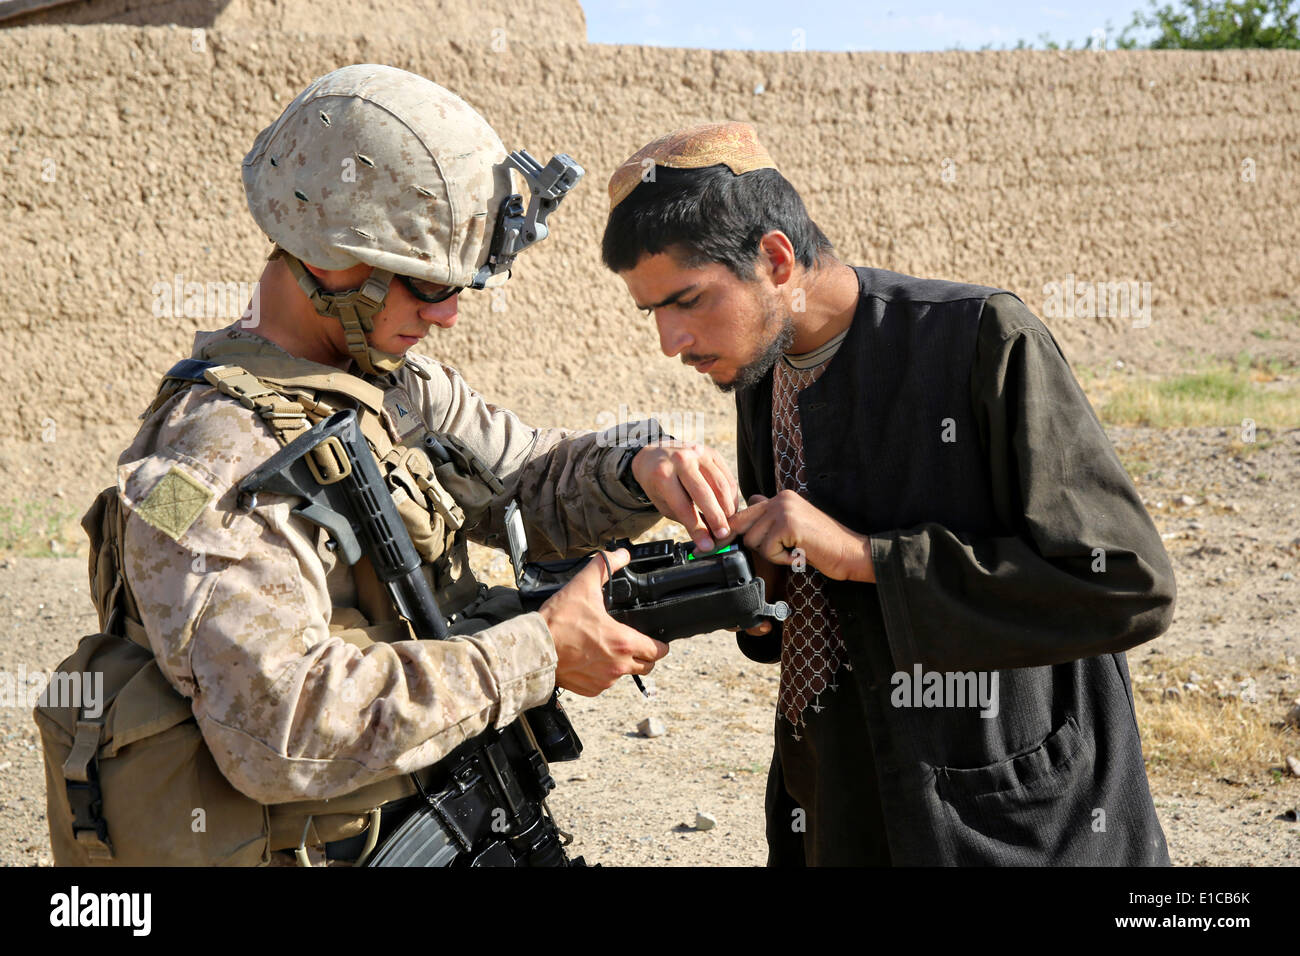 Un marine estadounidense con el 1er Batallón, 7º Regimiento de la Infantería de Marina, utiliza un dispositivo biométrico de inscripción y selección de un aldeano, durante una misión de contrainsurgencia el 15 de mayo de 2014 en la aldea de Larr, provincia de Helmand, Afganistán. Foto de stock